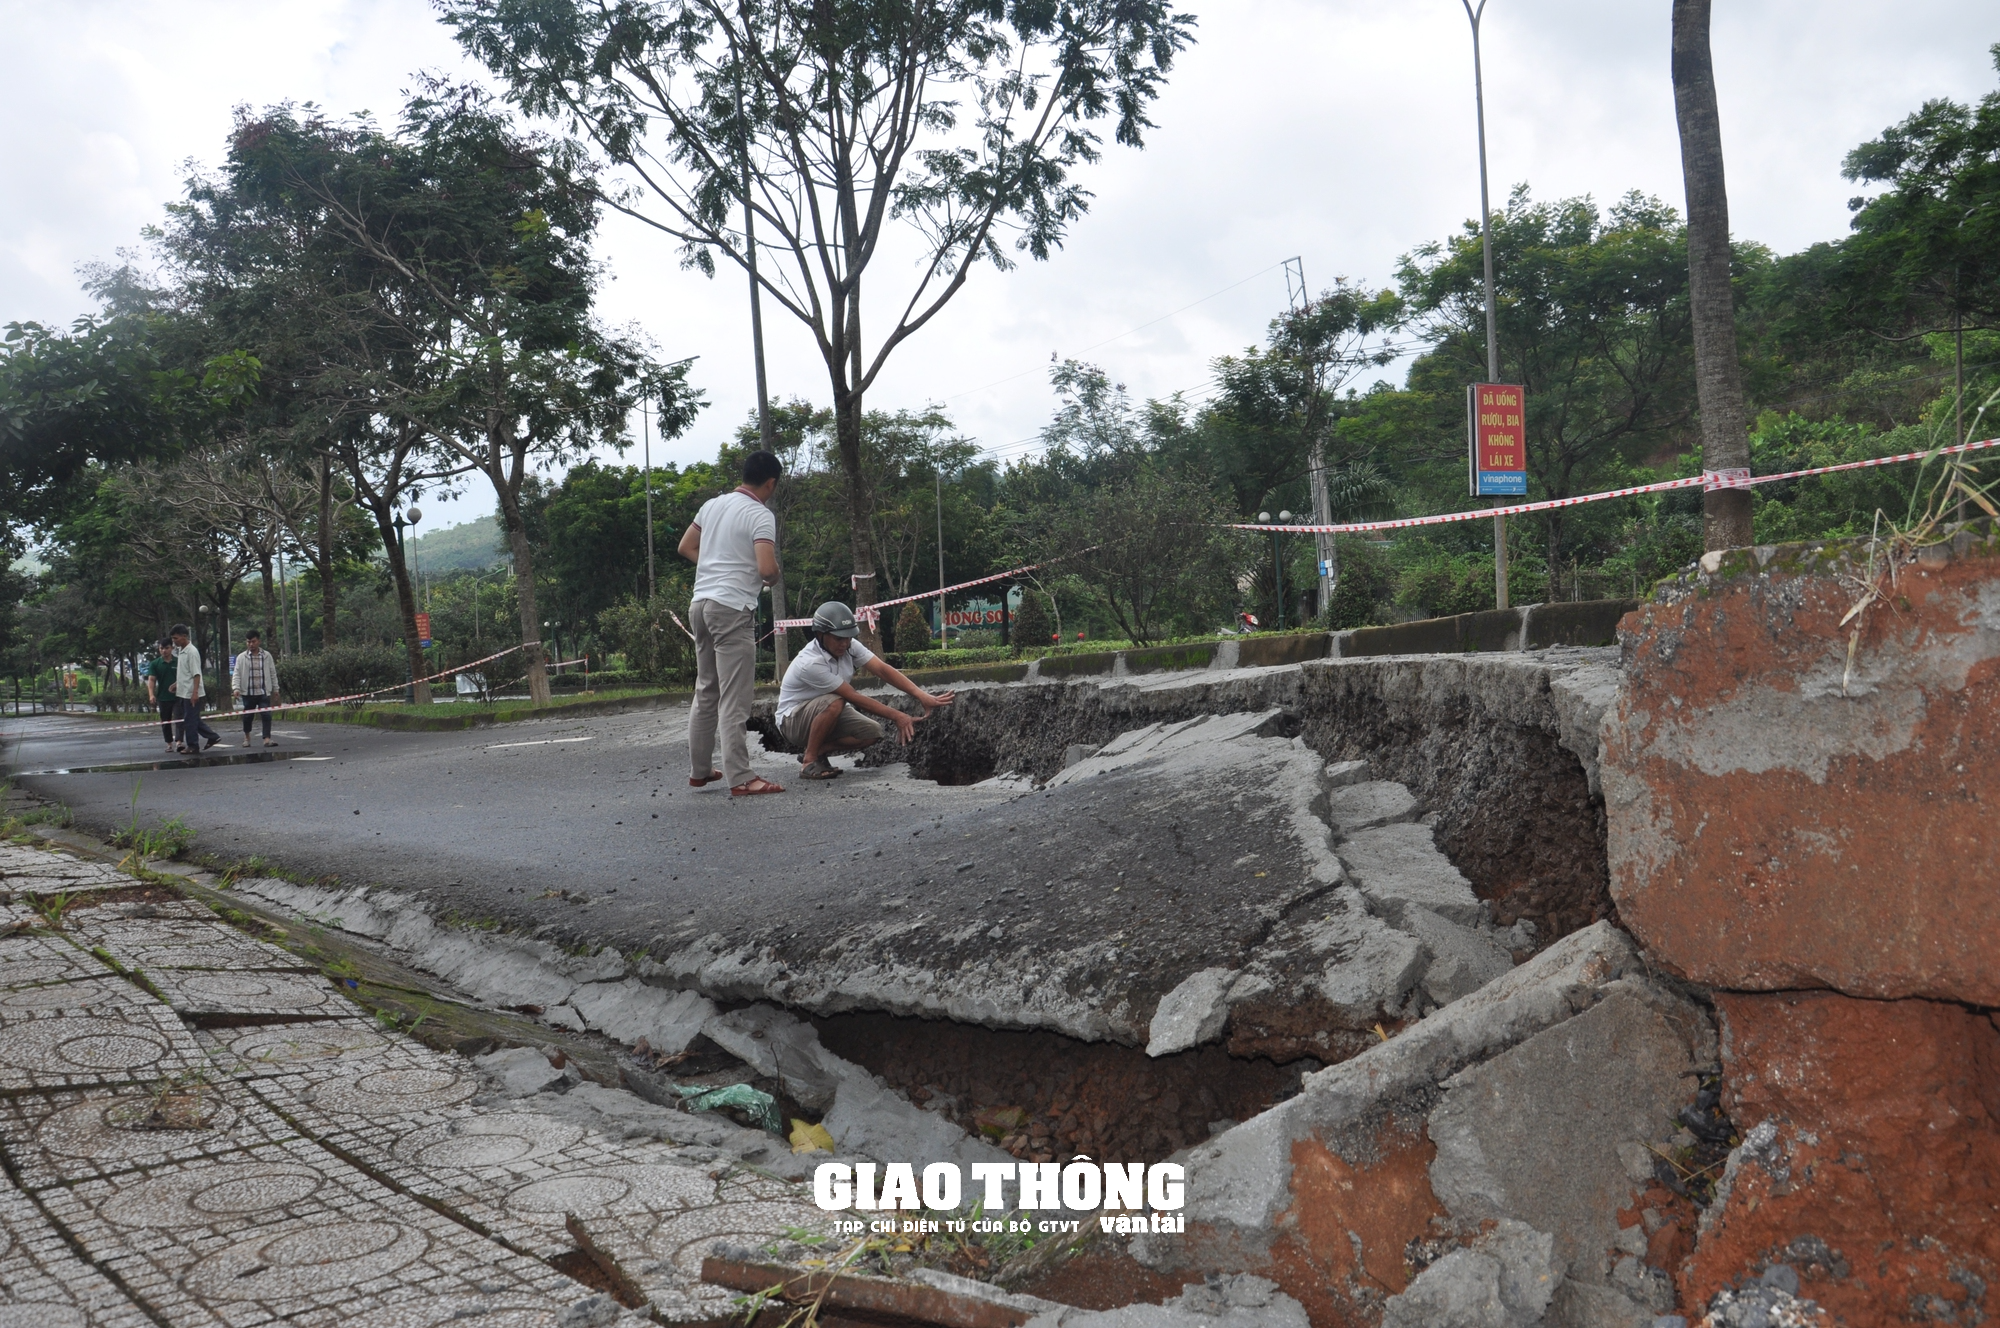 Cận cảnh sụt lún QL14 ở Đắk Nông: Vết sụt trượt liên tục mở rộng, nguy cơ mất đường - Ảnh 8.